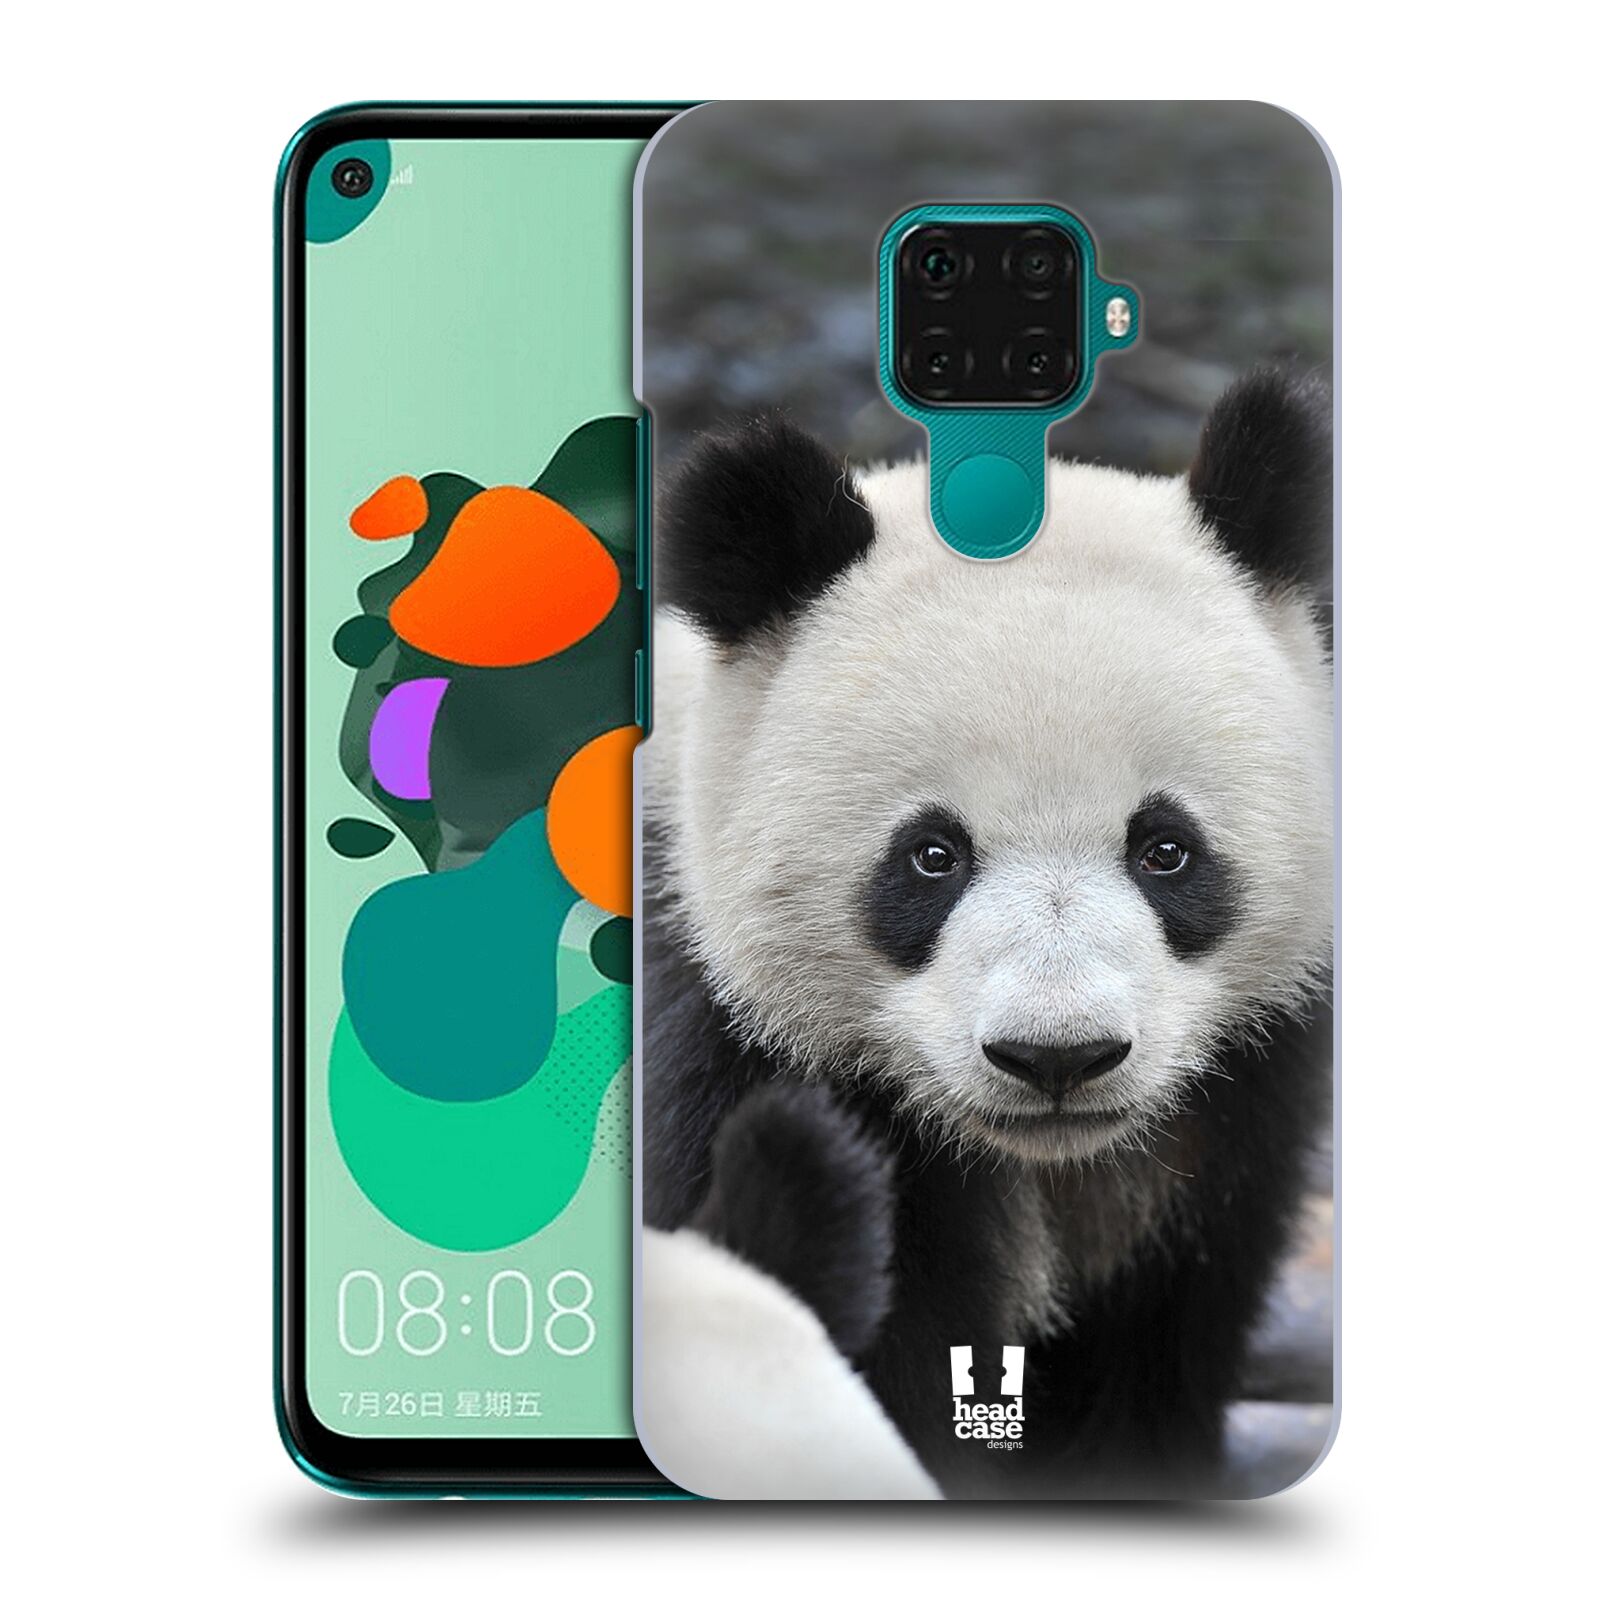 Zadní obal pro mobil Huawei Mate 30 LITE - HEAD CASE - Svět zvířat medvěd panda